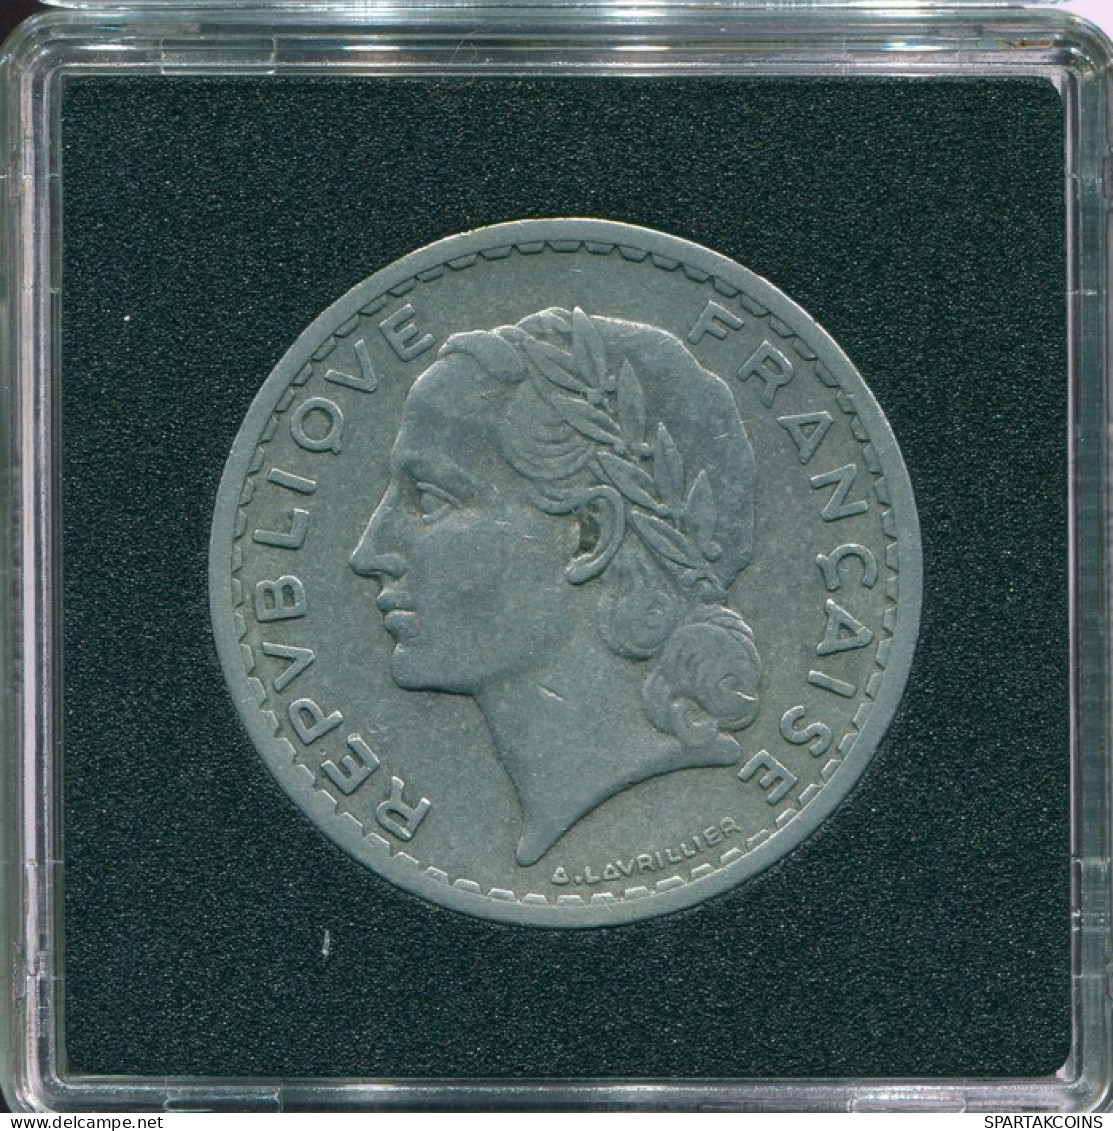 5 FRANCS 1952 FRANCE Coin KEY DATE Low Mintage #FR1014.89 - 5 Francs